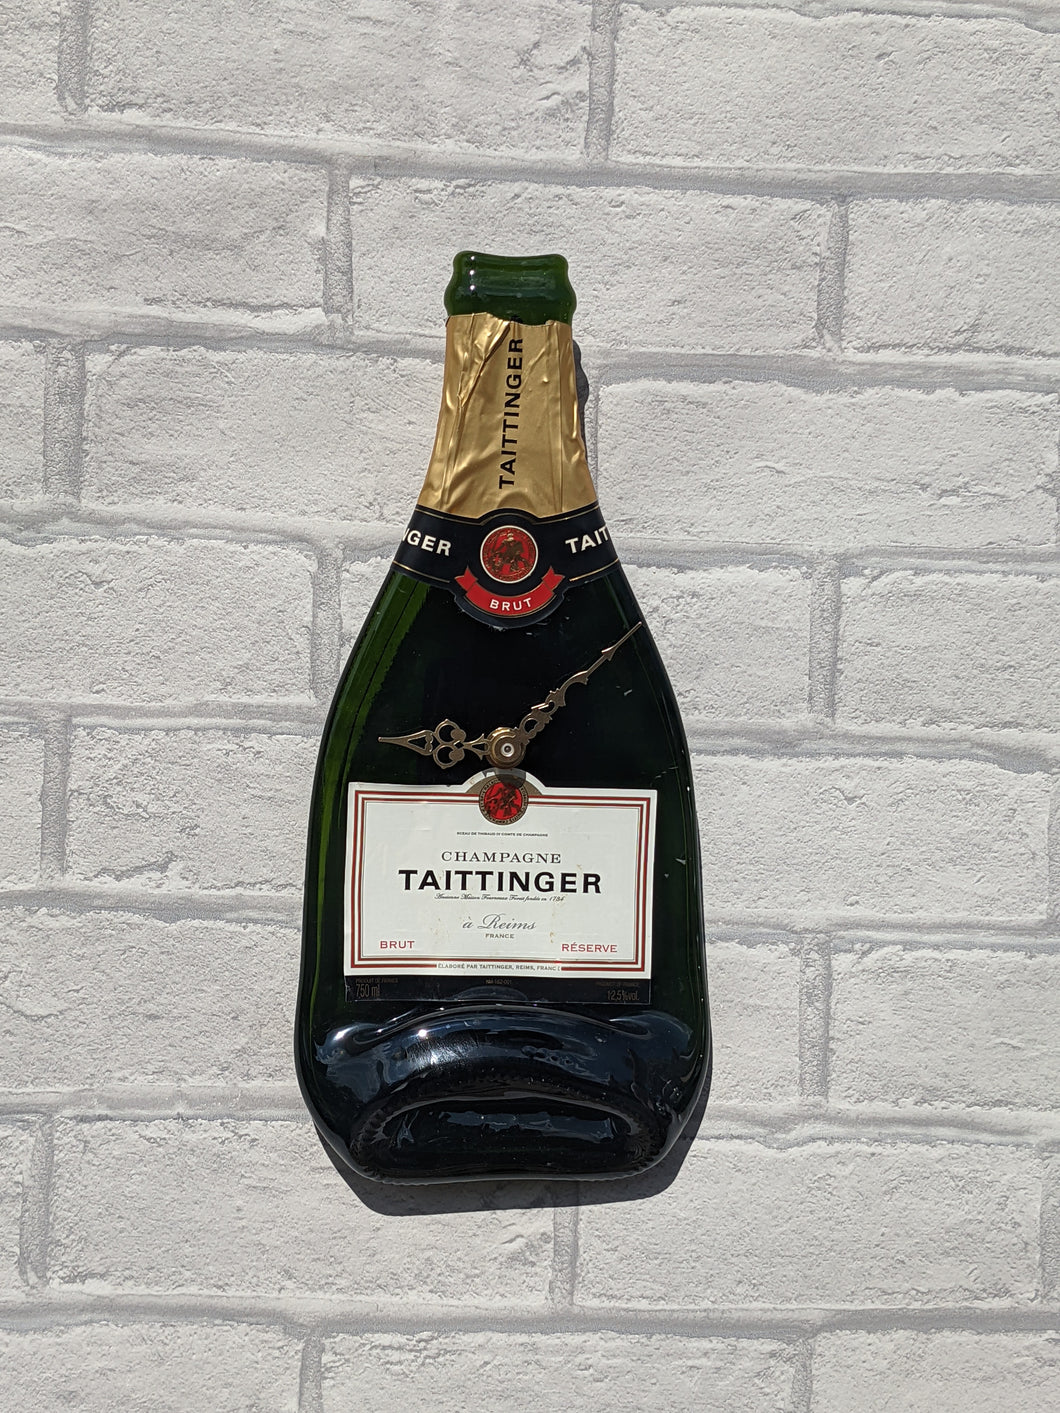 Taittinger Champagne bottle clock